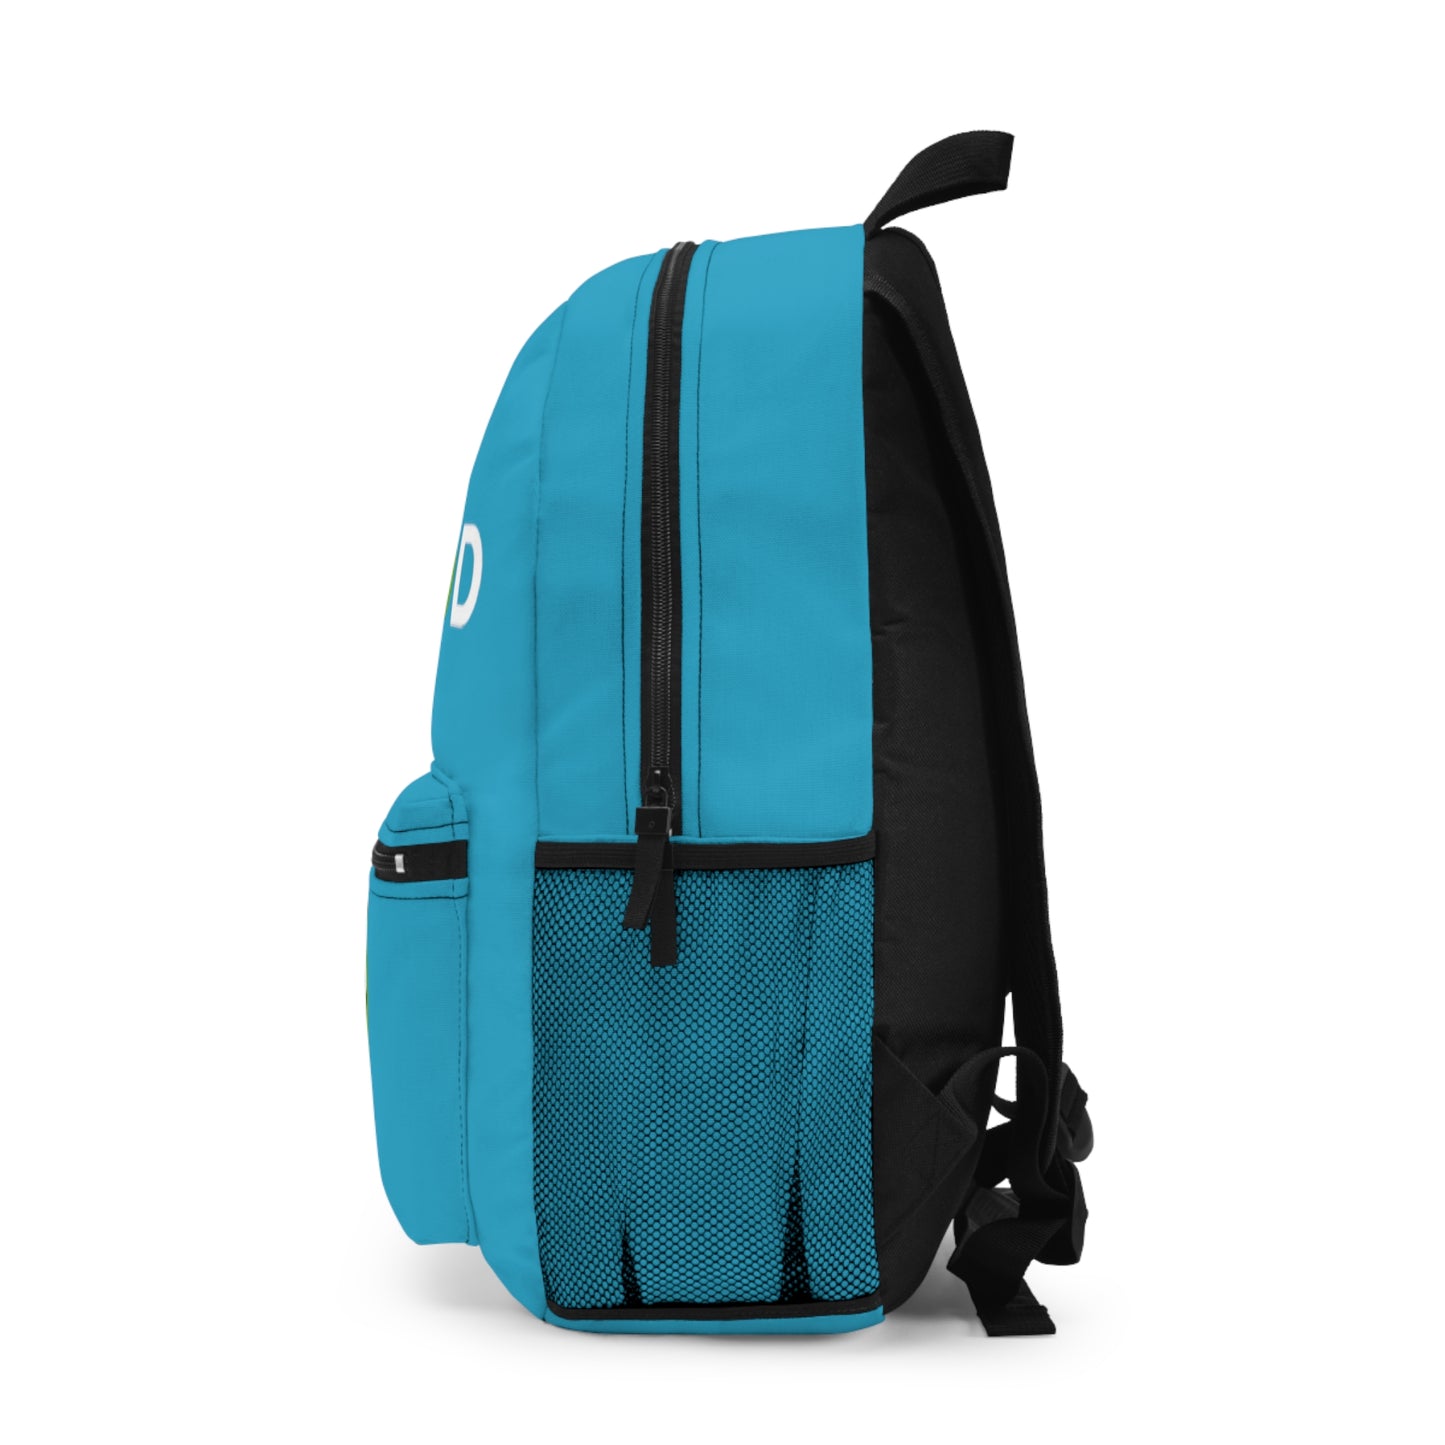 Light Blue Backpack LiveGood